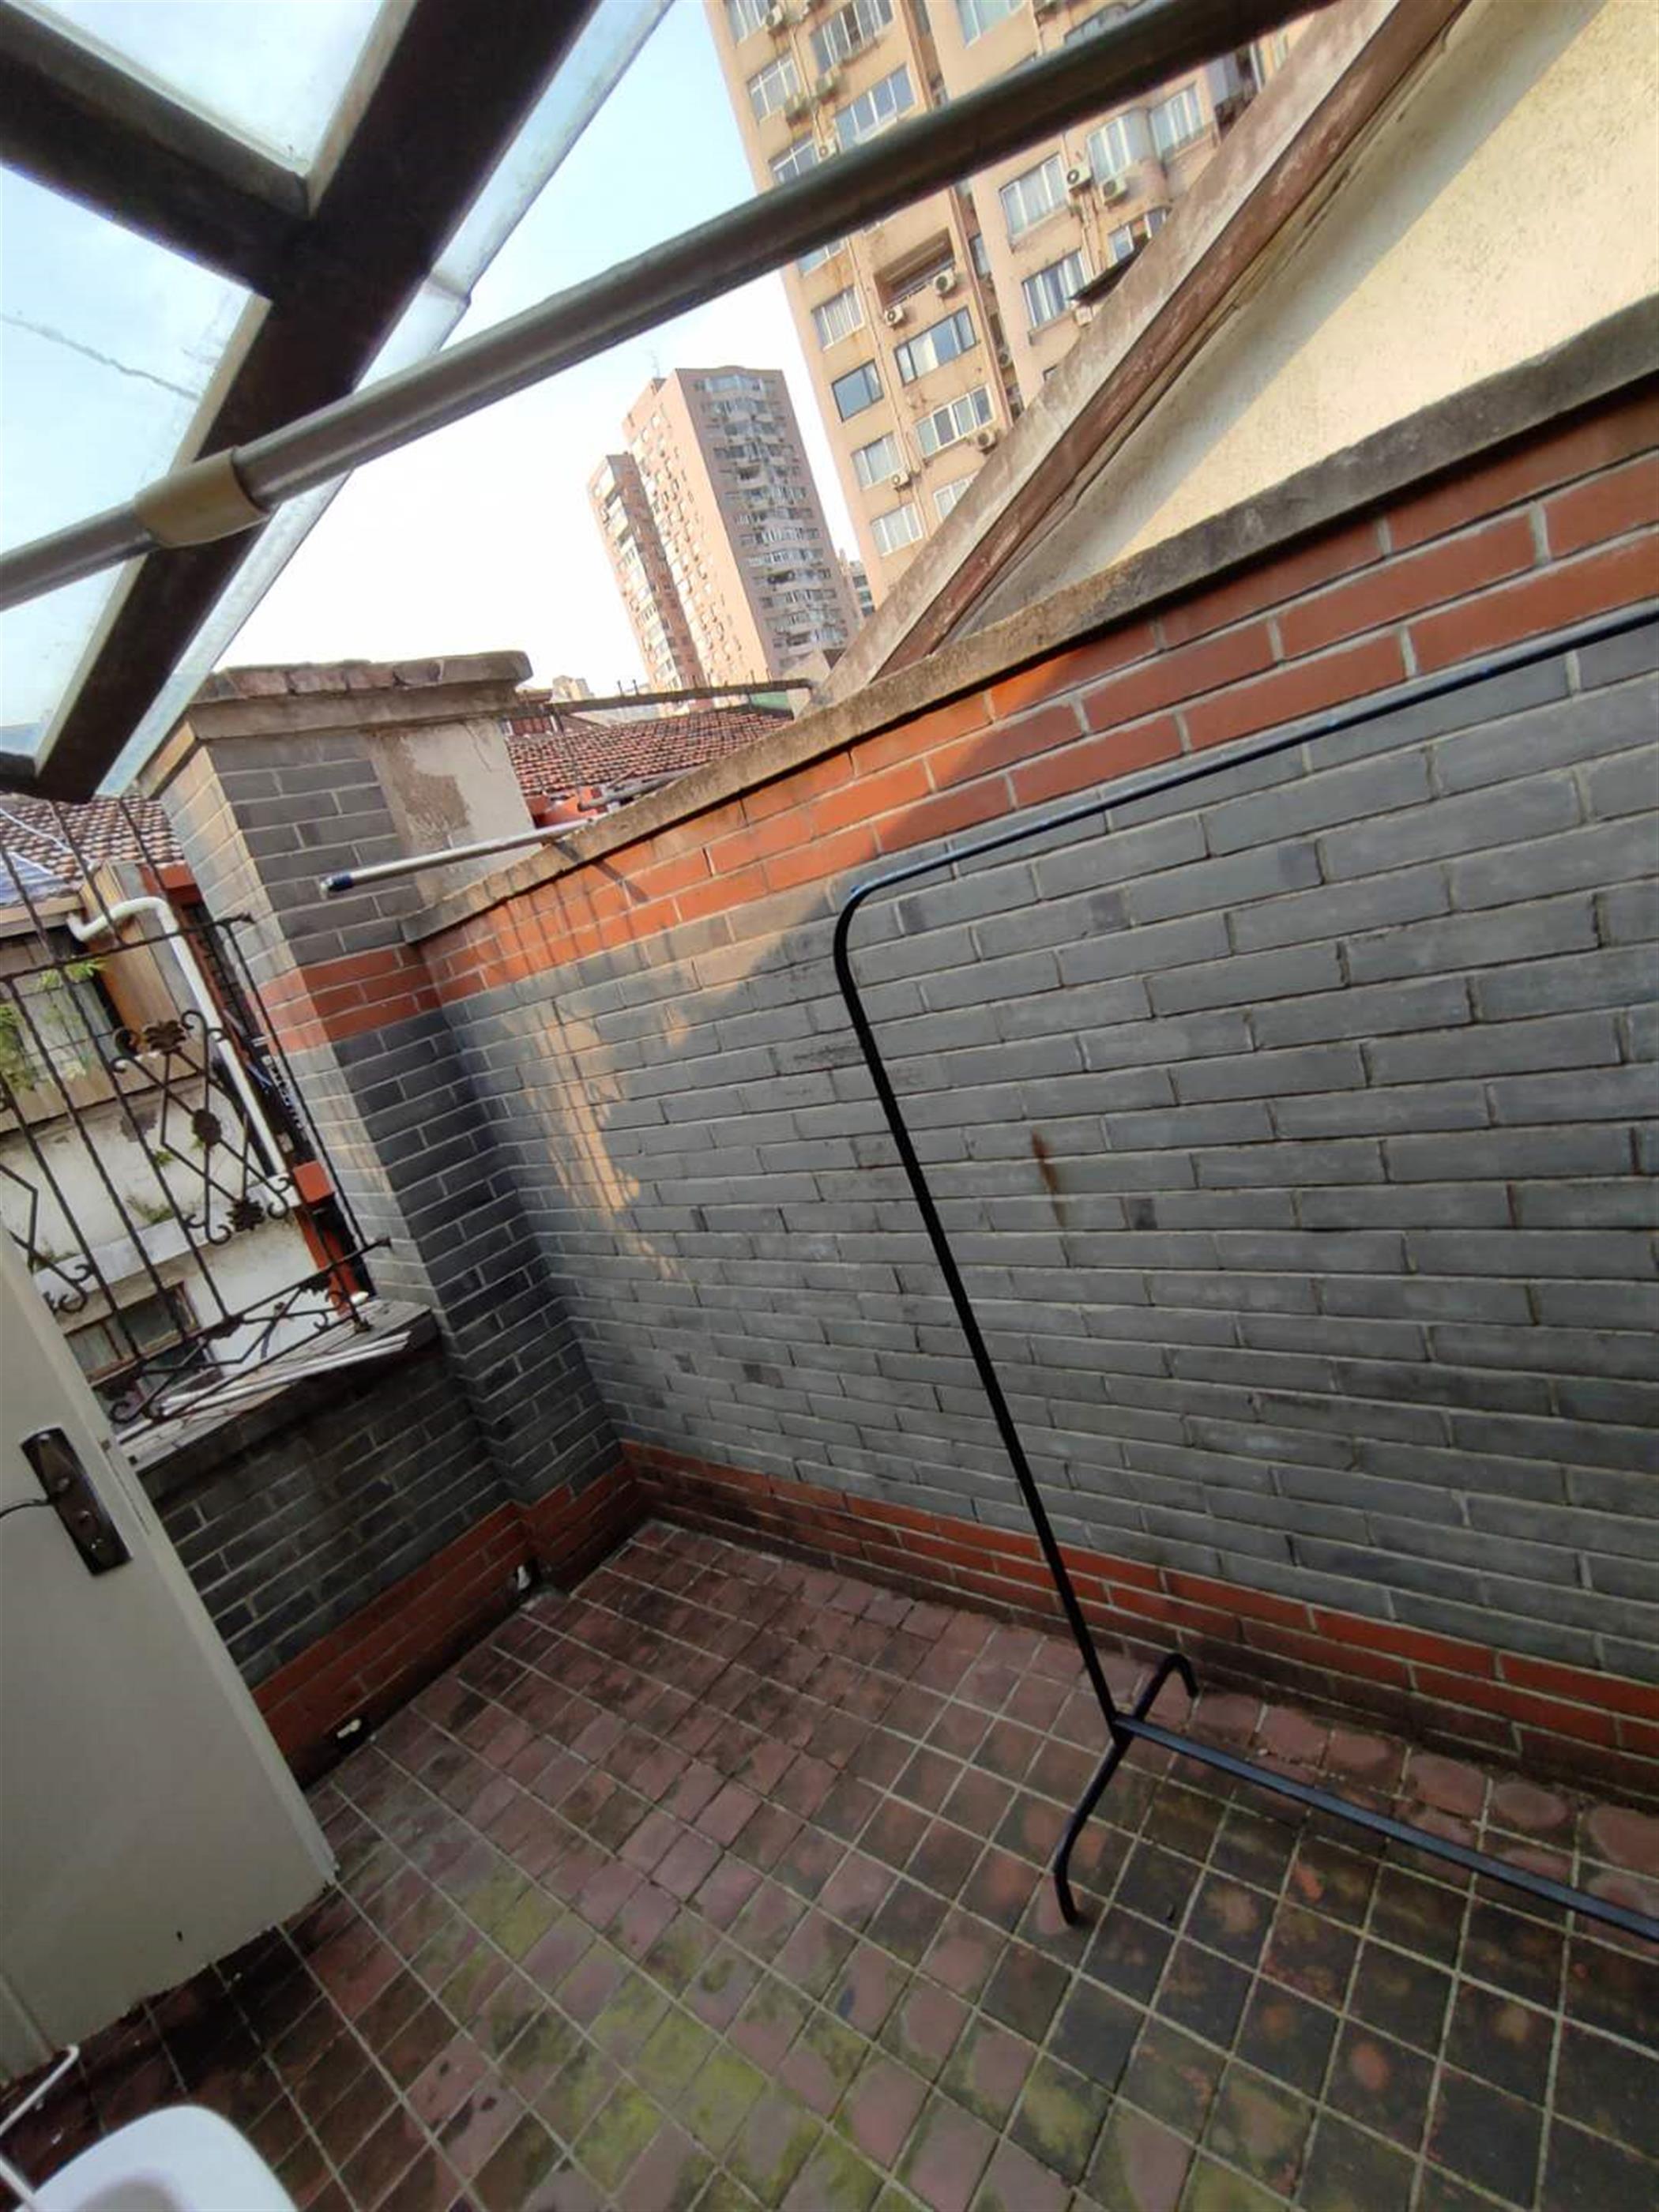 terrace 3-Floor 3BR Lane House Nr Ln 2/12/13 for Rent in Shanghai